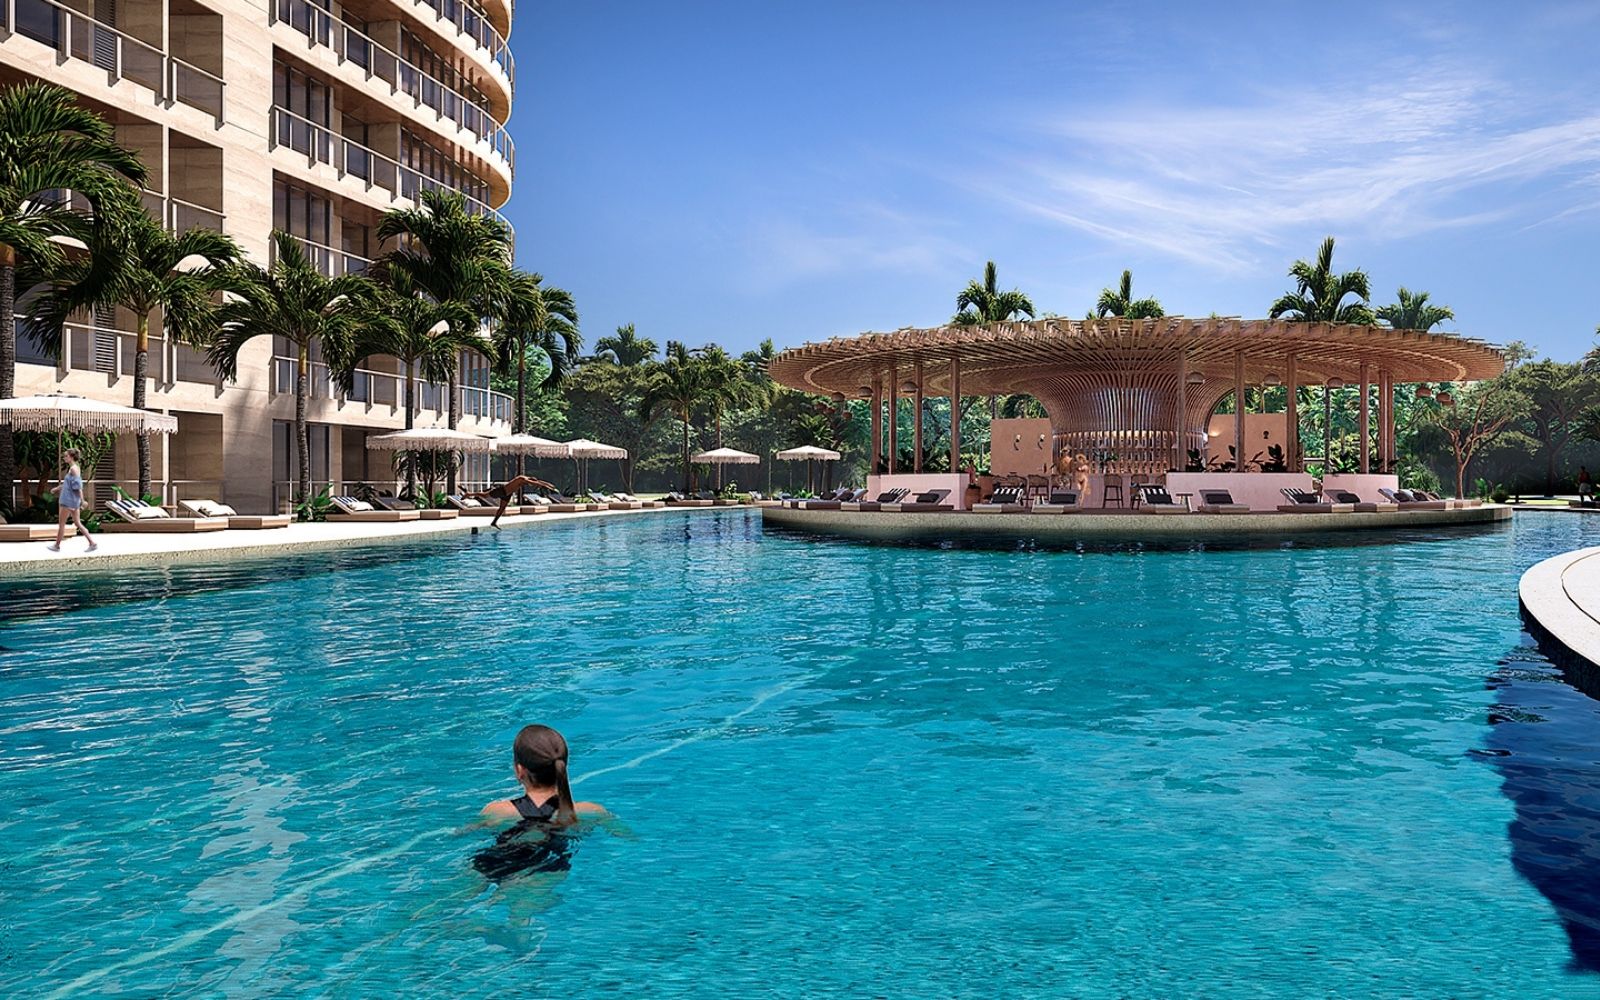 Condo con vista al mar y la marina, con amenidades: alberca infinity, spa, gimnasio, area lounge, salon de eventos, lobby, en Puerto Cancun